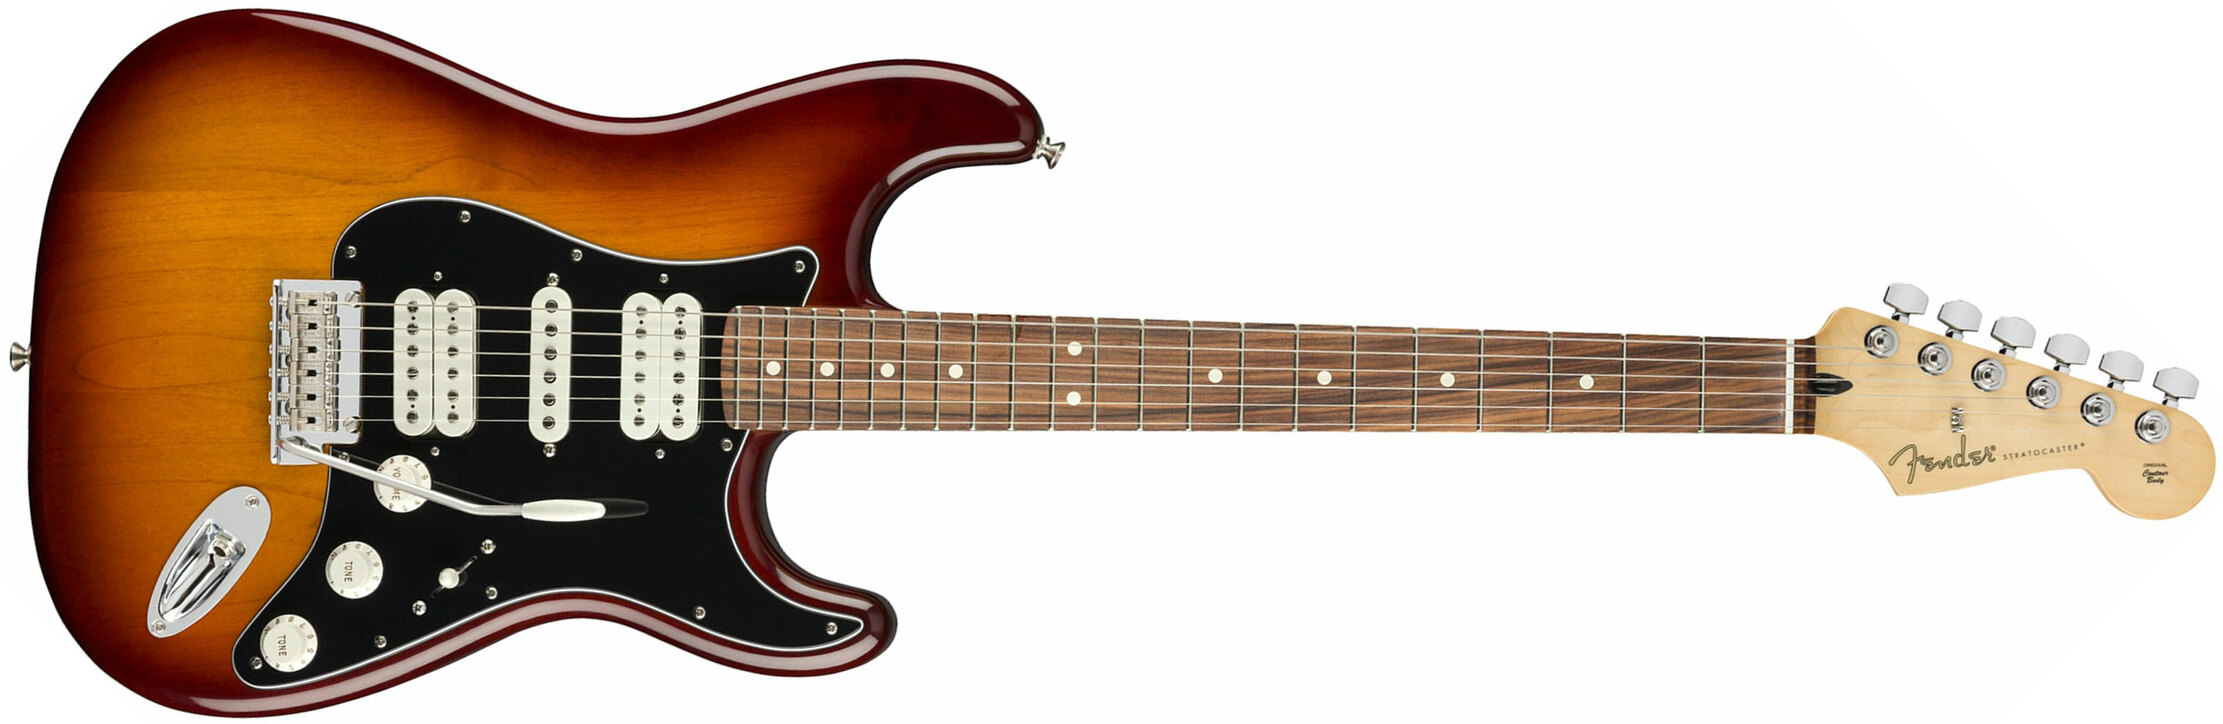 Fender Strat Player Mex Hsh Pf - Tobacco Burst - Elektrische gitaar in Str-vorm - Main picture